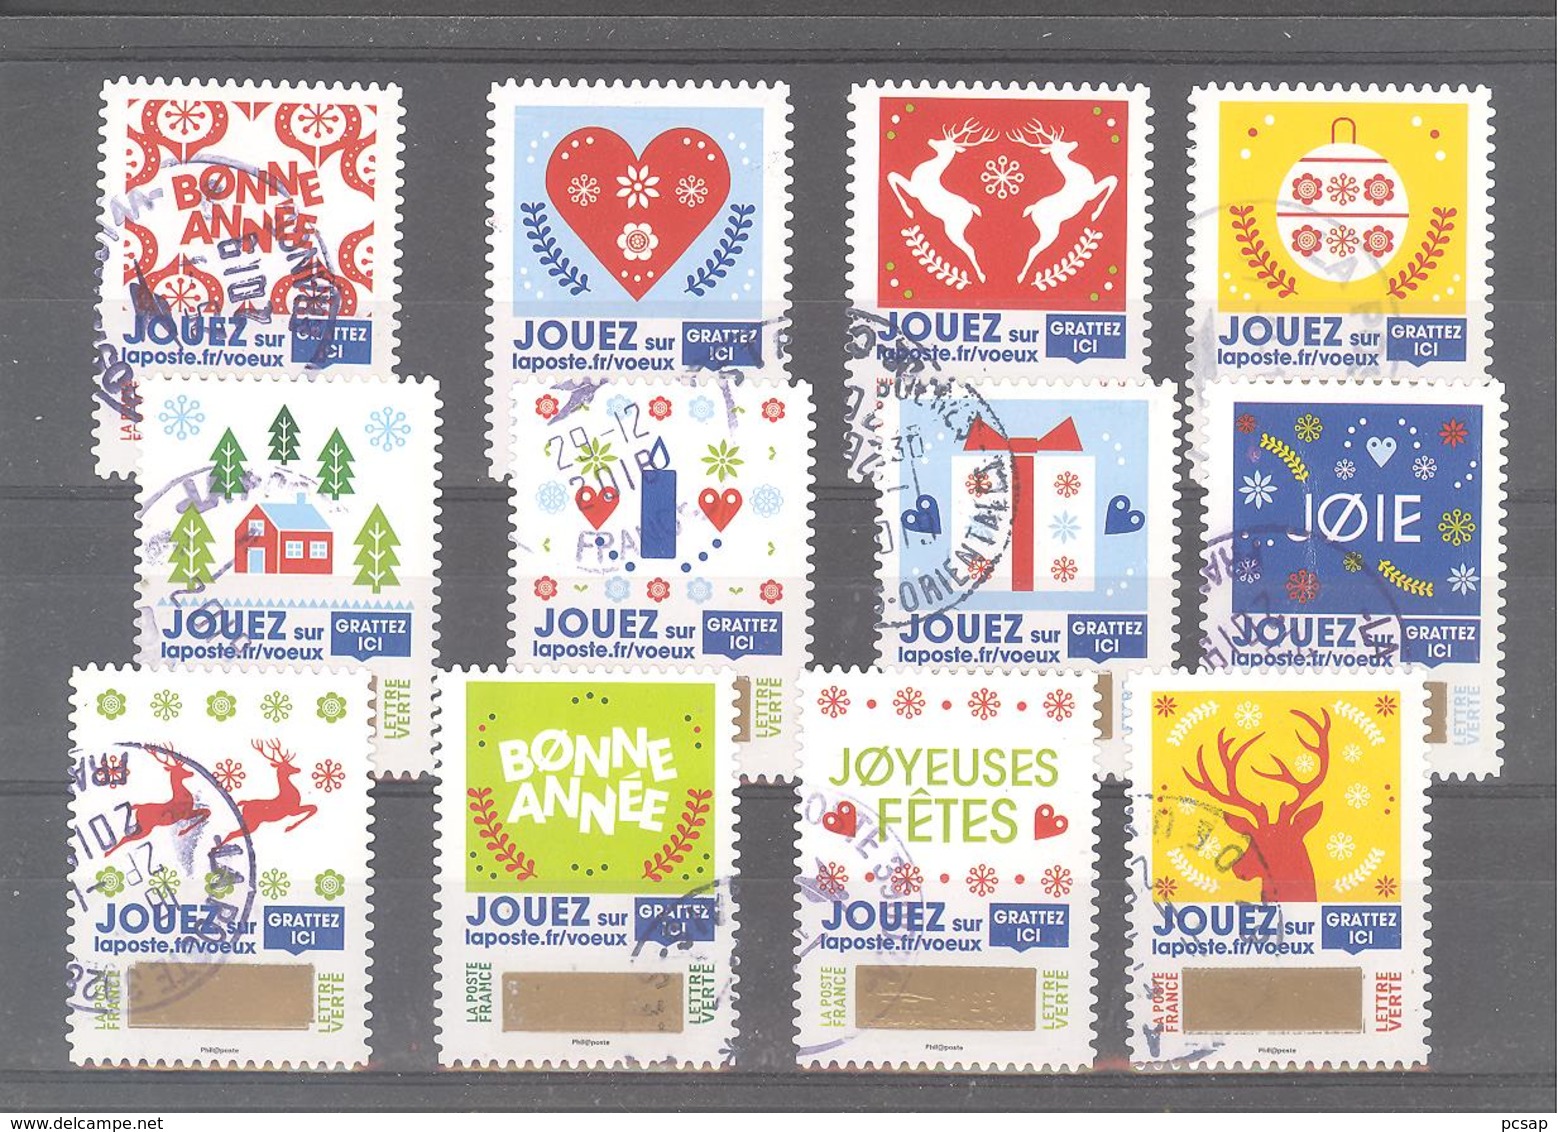 France Autoadhésifs Oblitérés (Série Complète : Envoyez Plus Que Des Voeux Timbres à Gratter) (cachet Rond) - Used Stamps